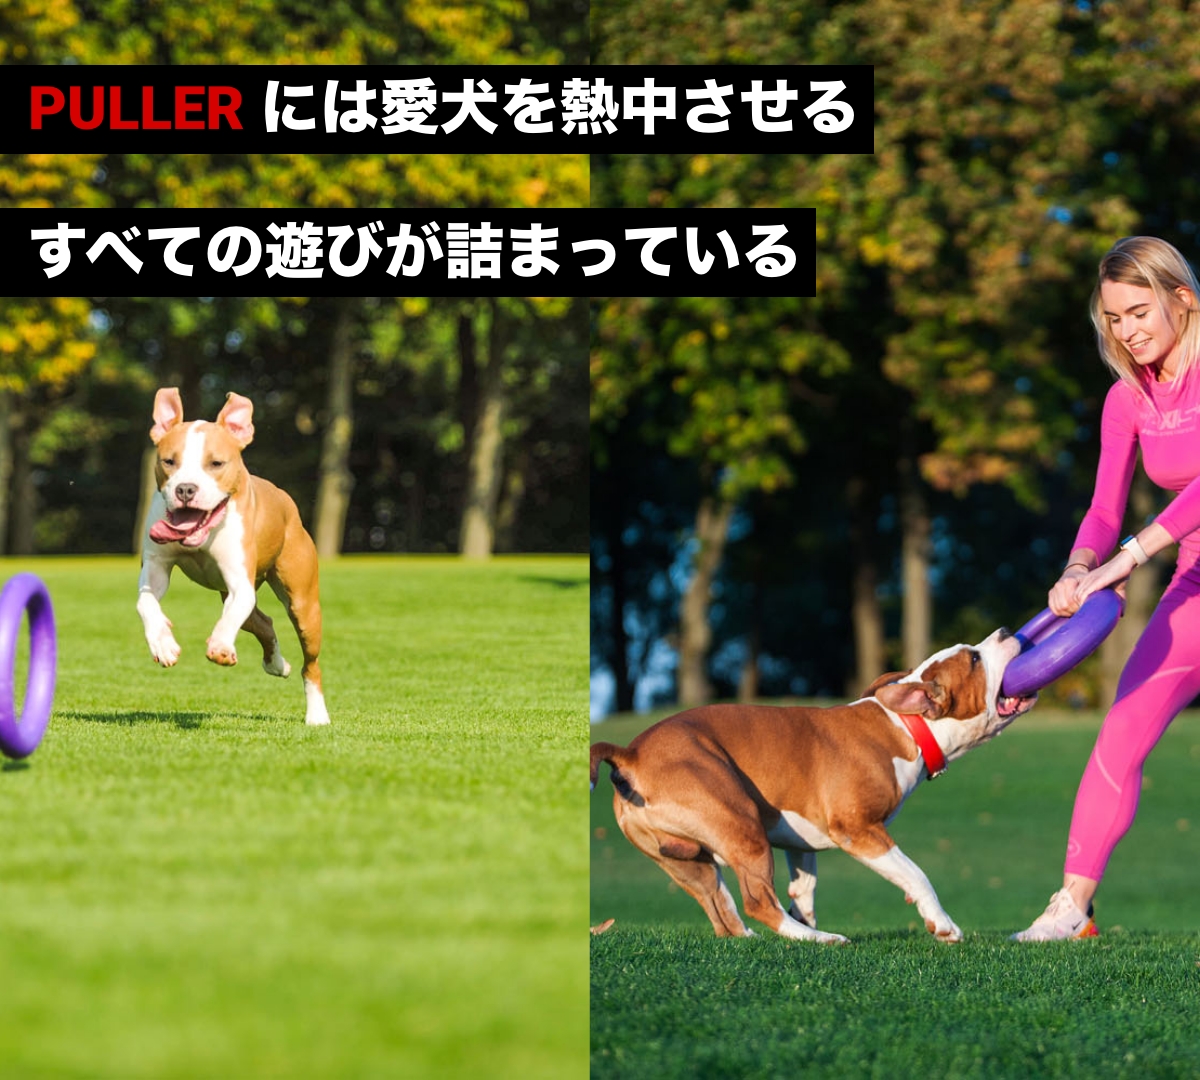 PULLER - by.PULLER公式サイト